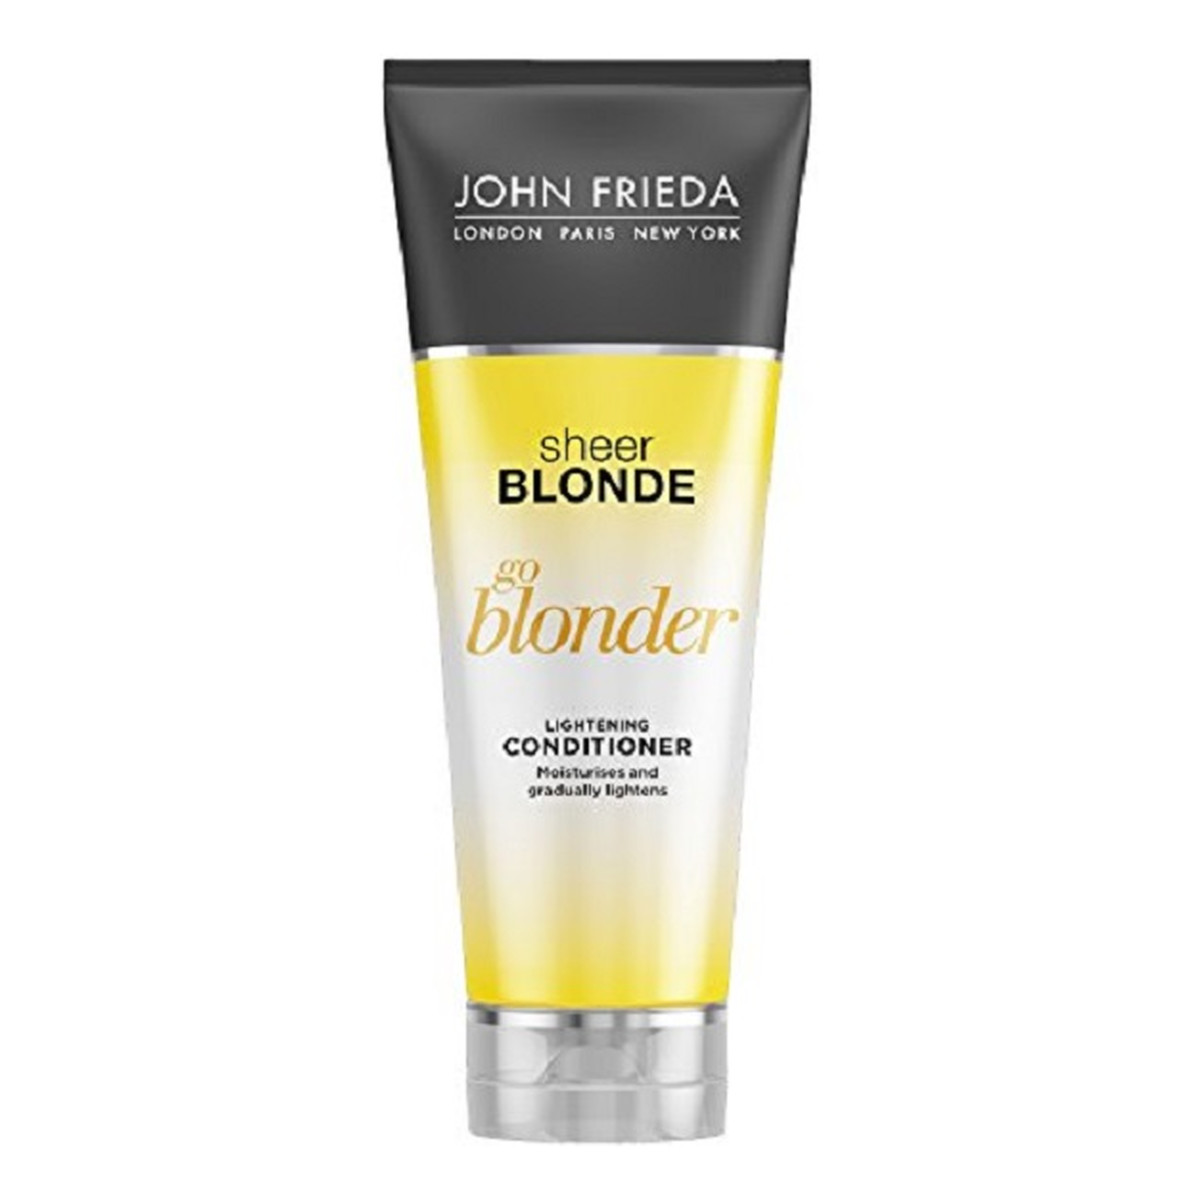 John Frieda Sheer Blonde Go Blonder rozświetlająca odżywka do włosów 250ml